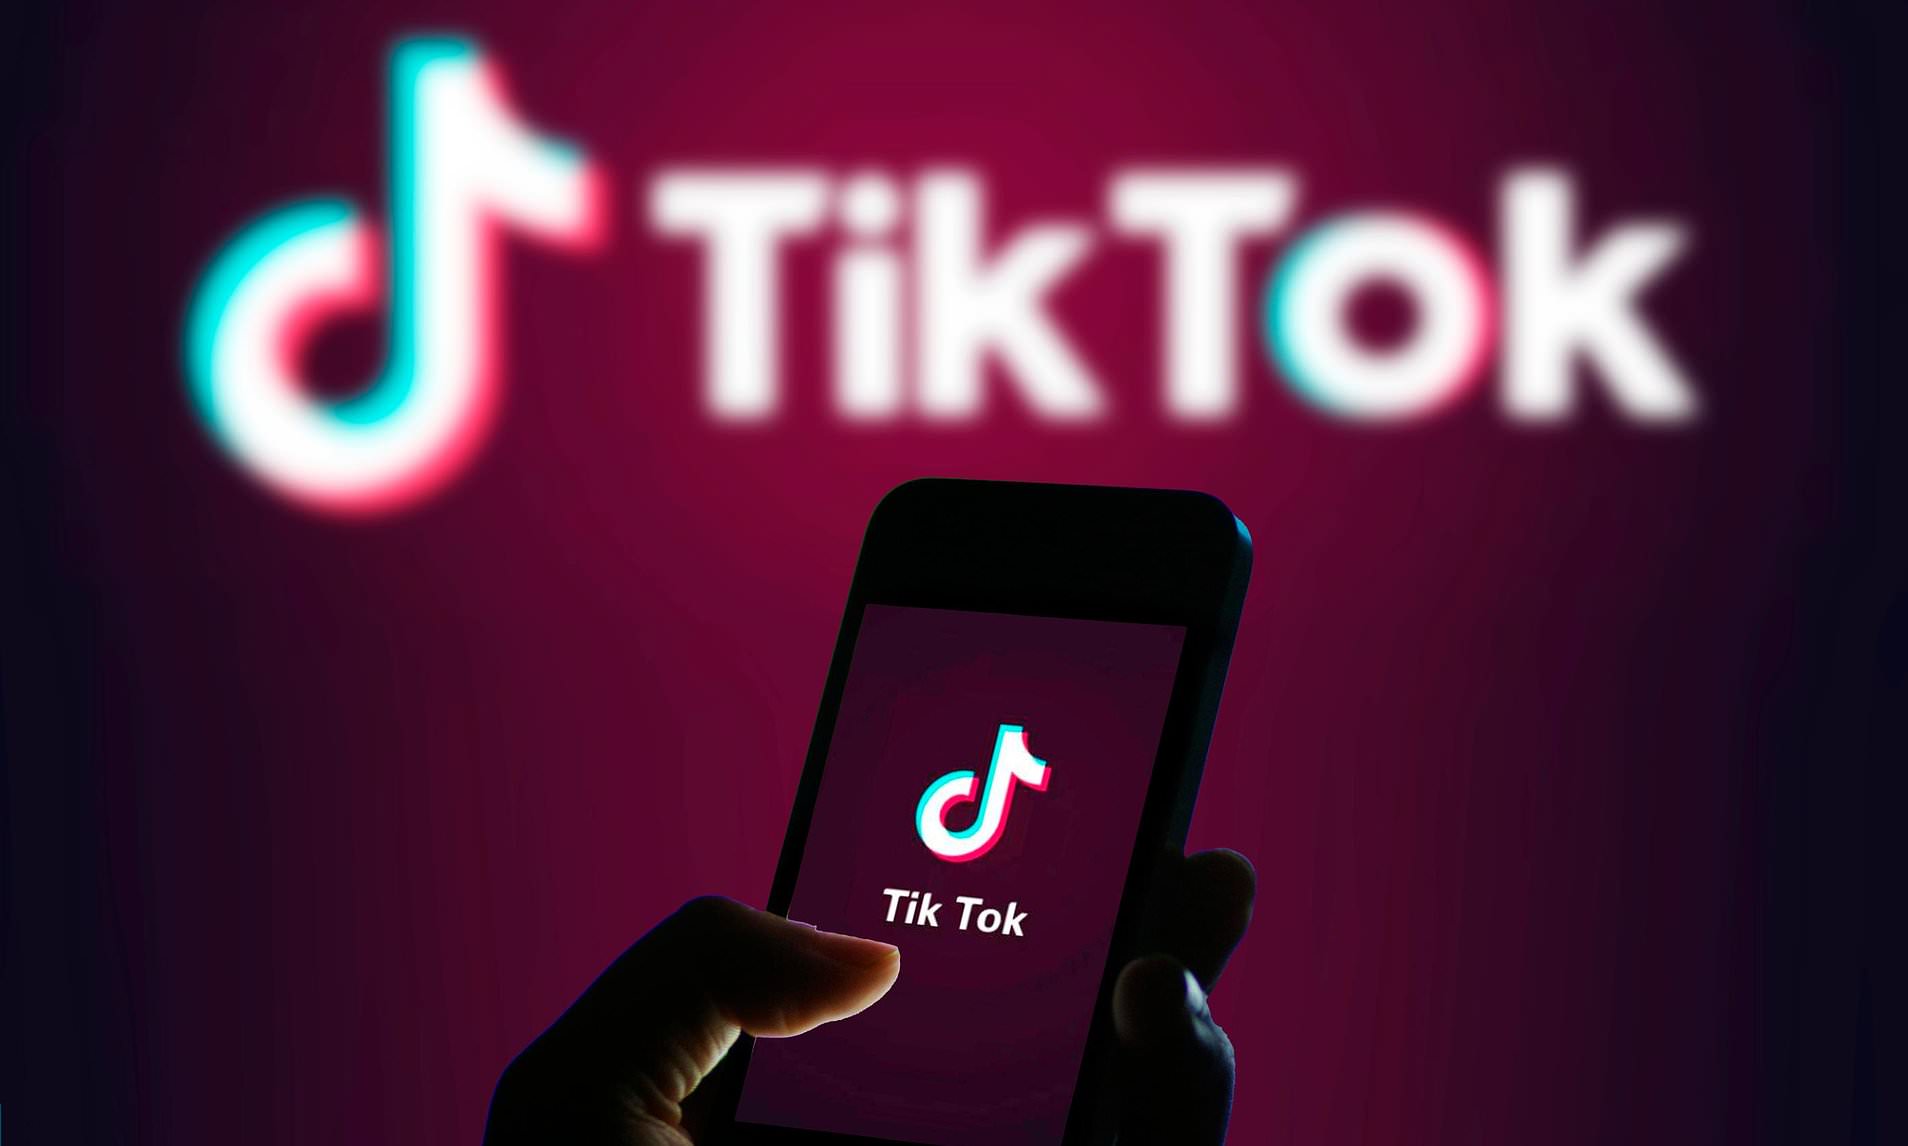 ABD, Çinli uygulama TikTok'u Yasaklıyor.